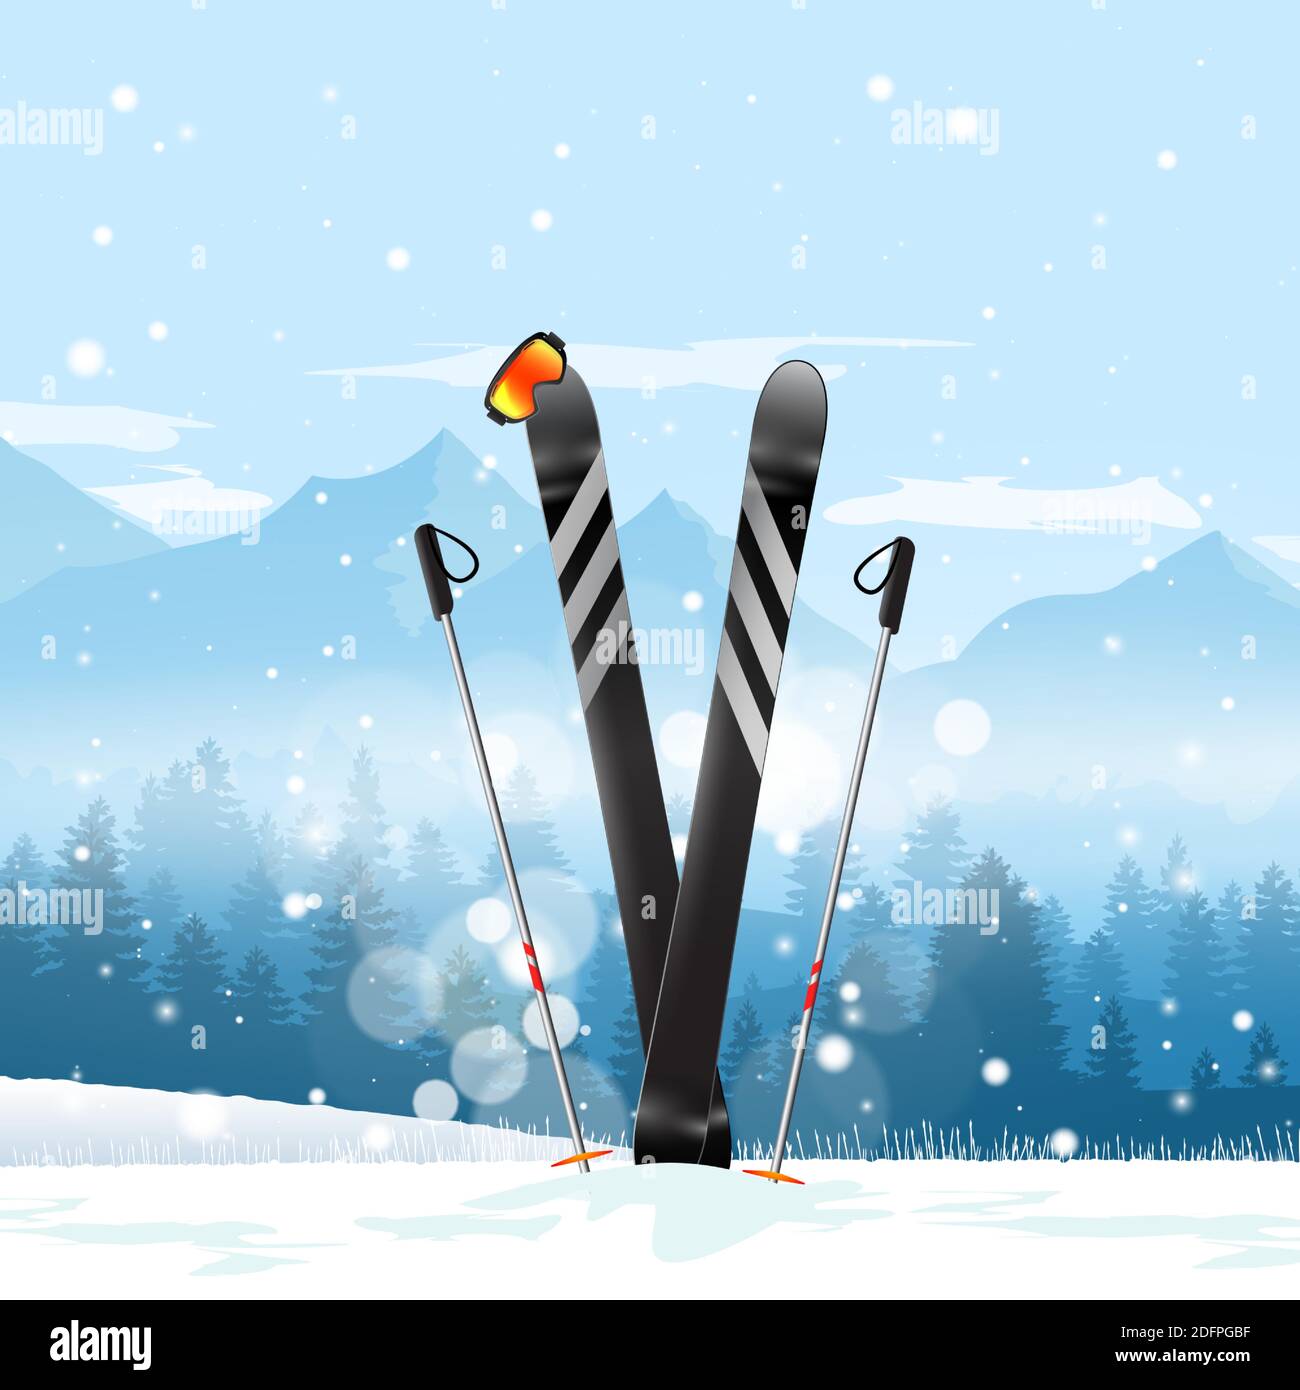 Paire de skis de croix dans la neige. Ski hiver montagne paysage fond.  Illustration vectorielle Image Vectorielle Stock - Alamy